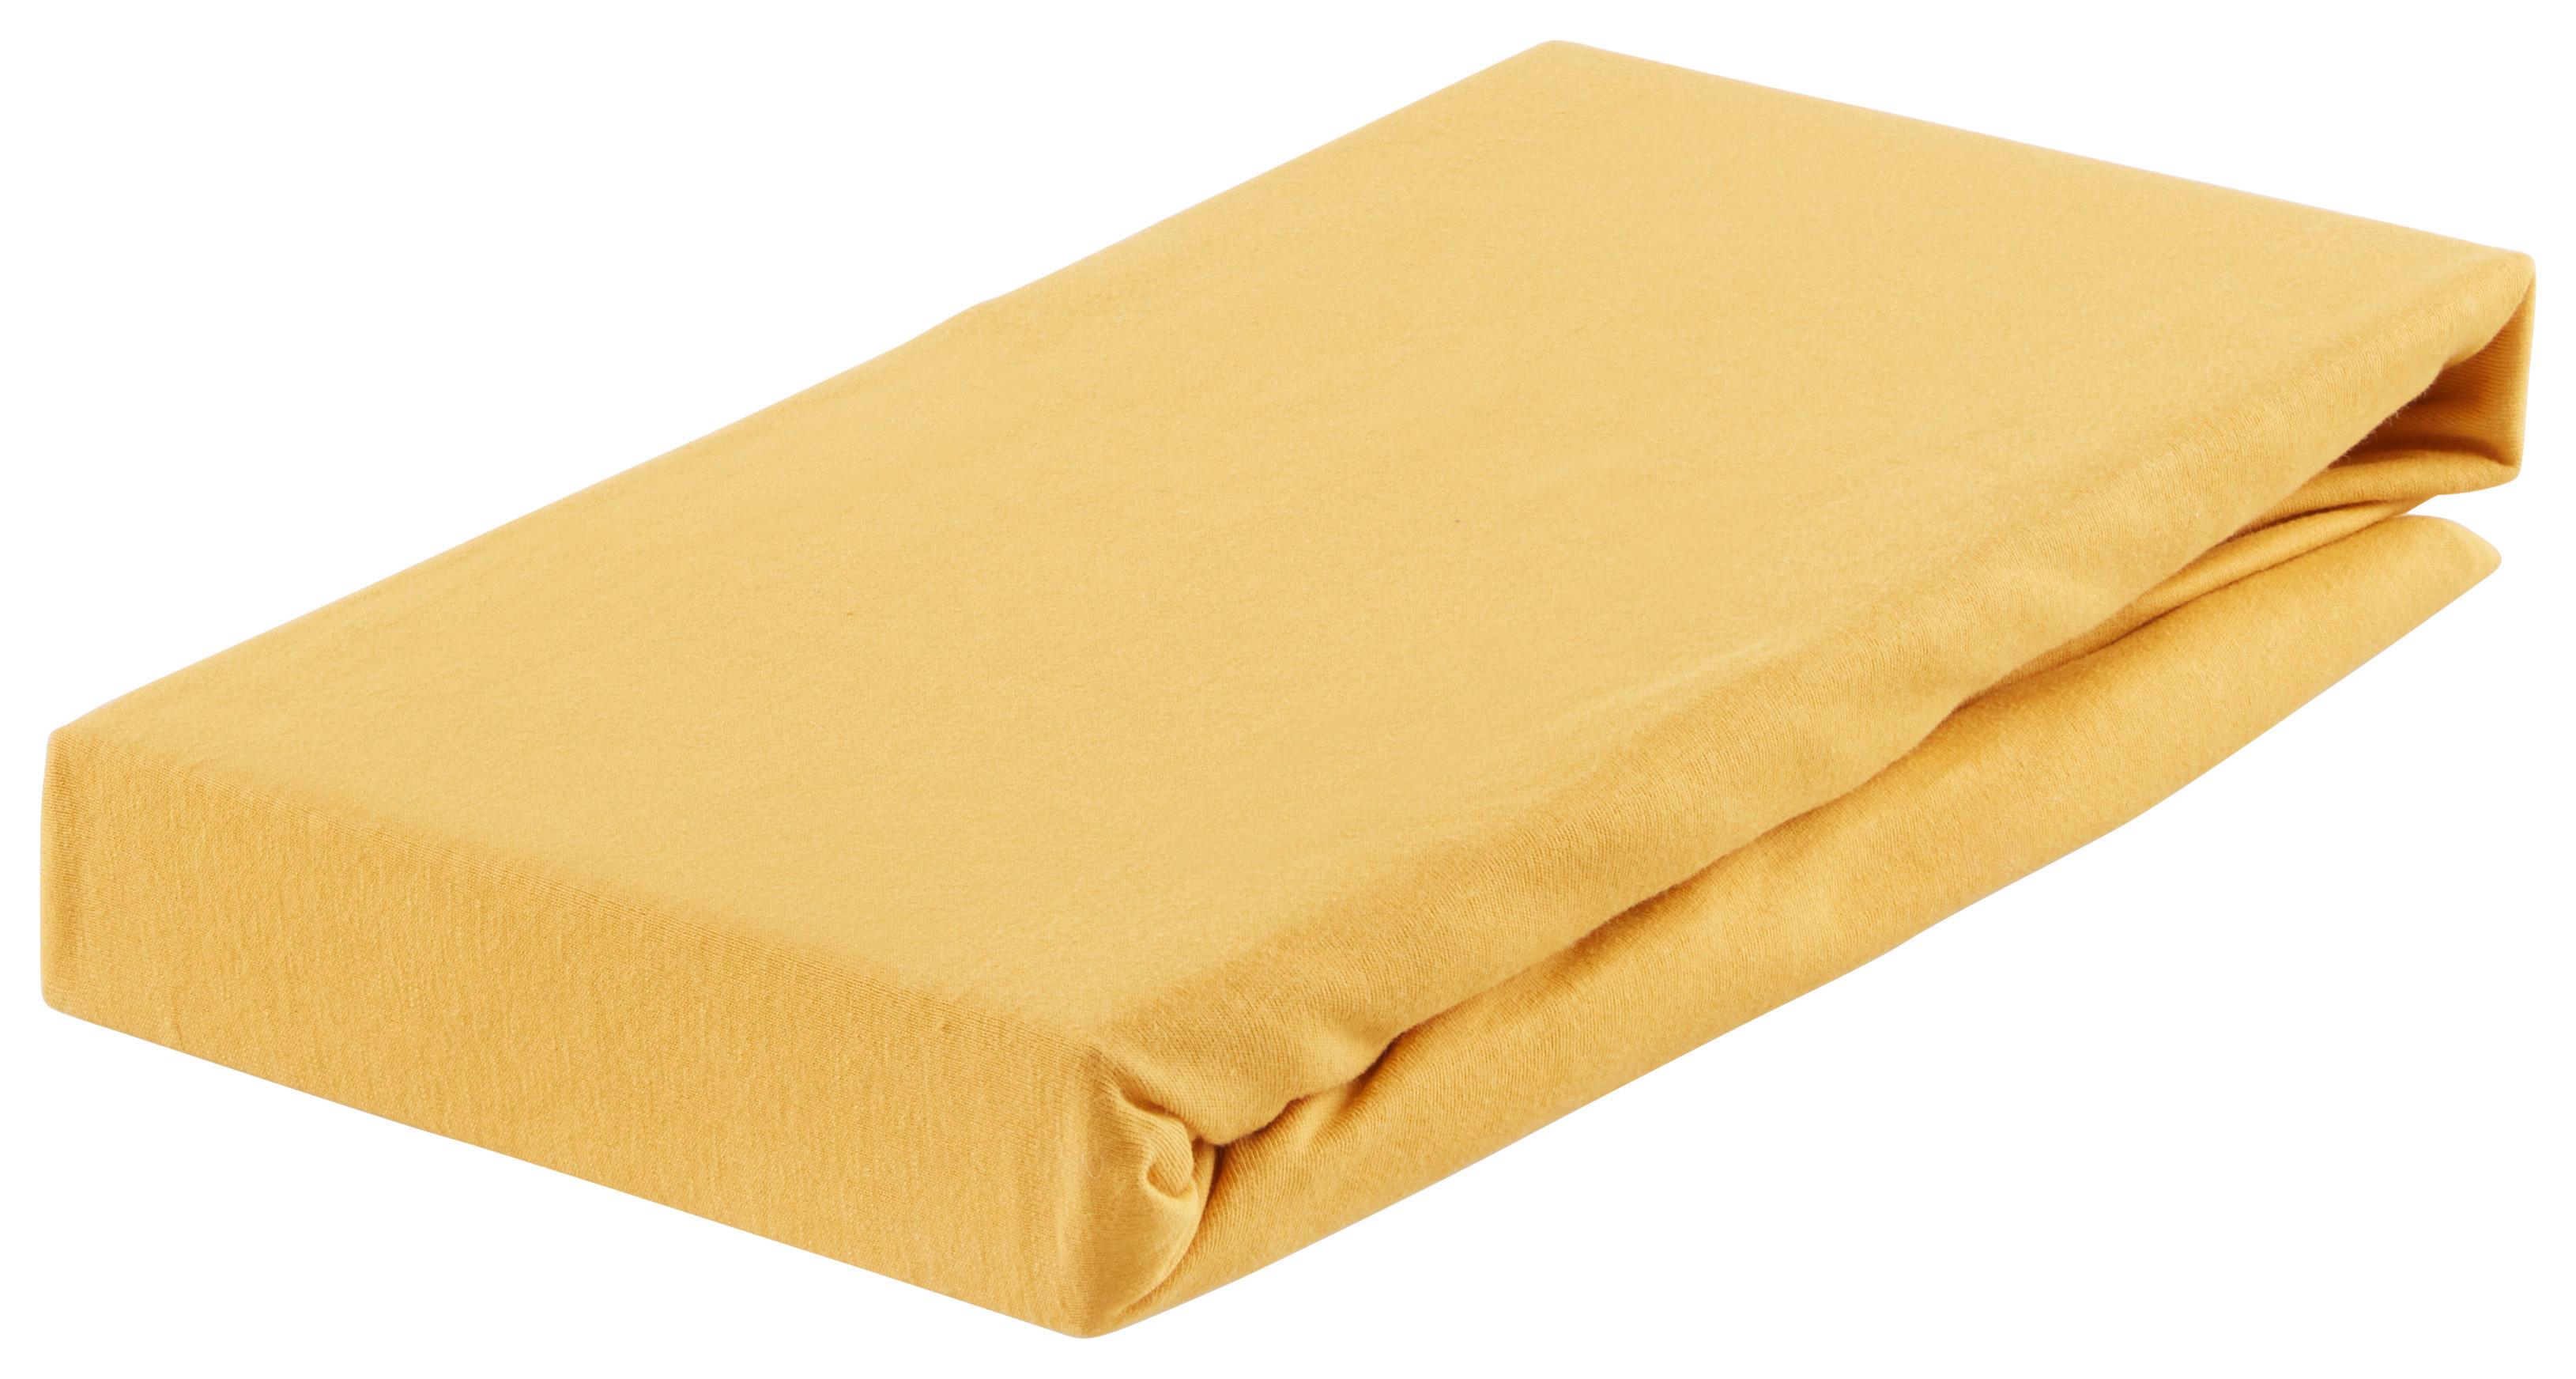 Elastické Prostěradlo Basic, 100/200cm, Žlutá - tmavě žlutá, textil (100/200cm) - Modern Living